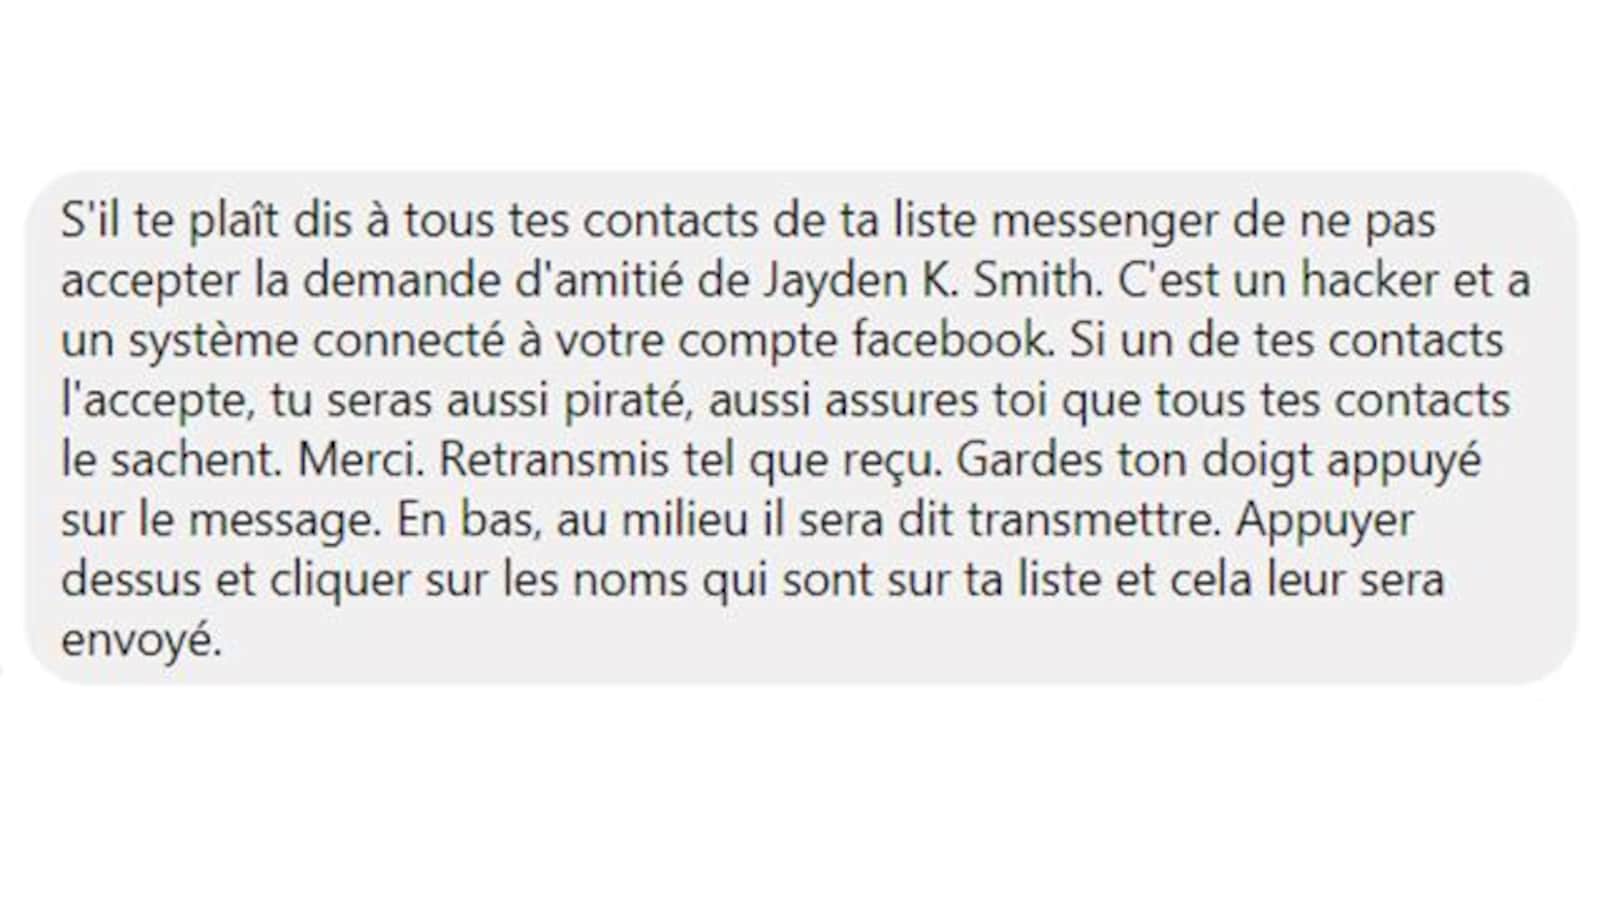 Capture d'écran d'un faux message viral sur Facebook mettant en garde contre un supposé pirate informatique nommé Jayden K. Smith.